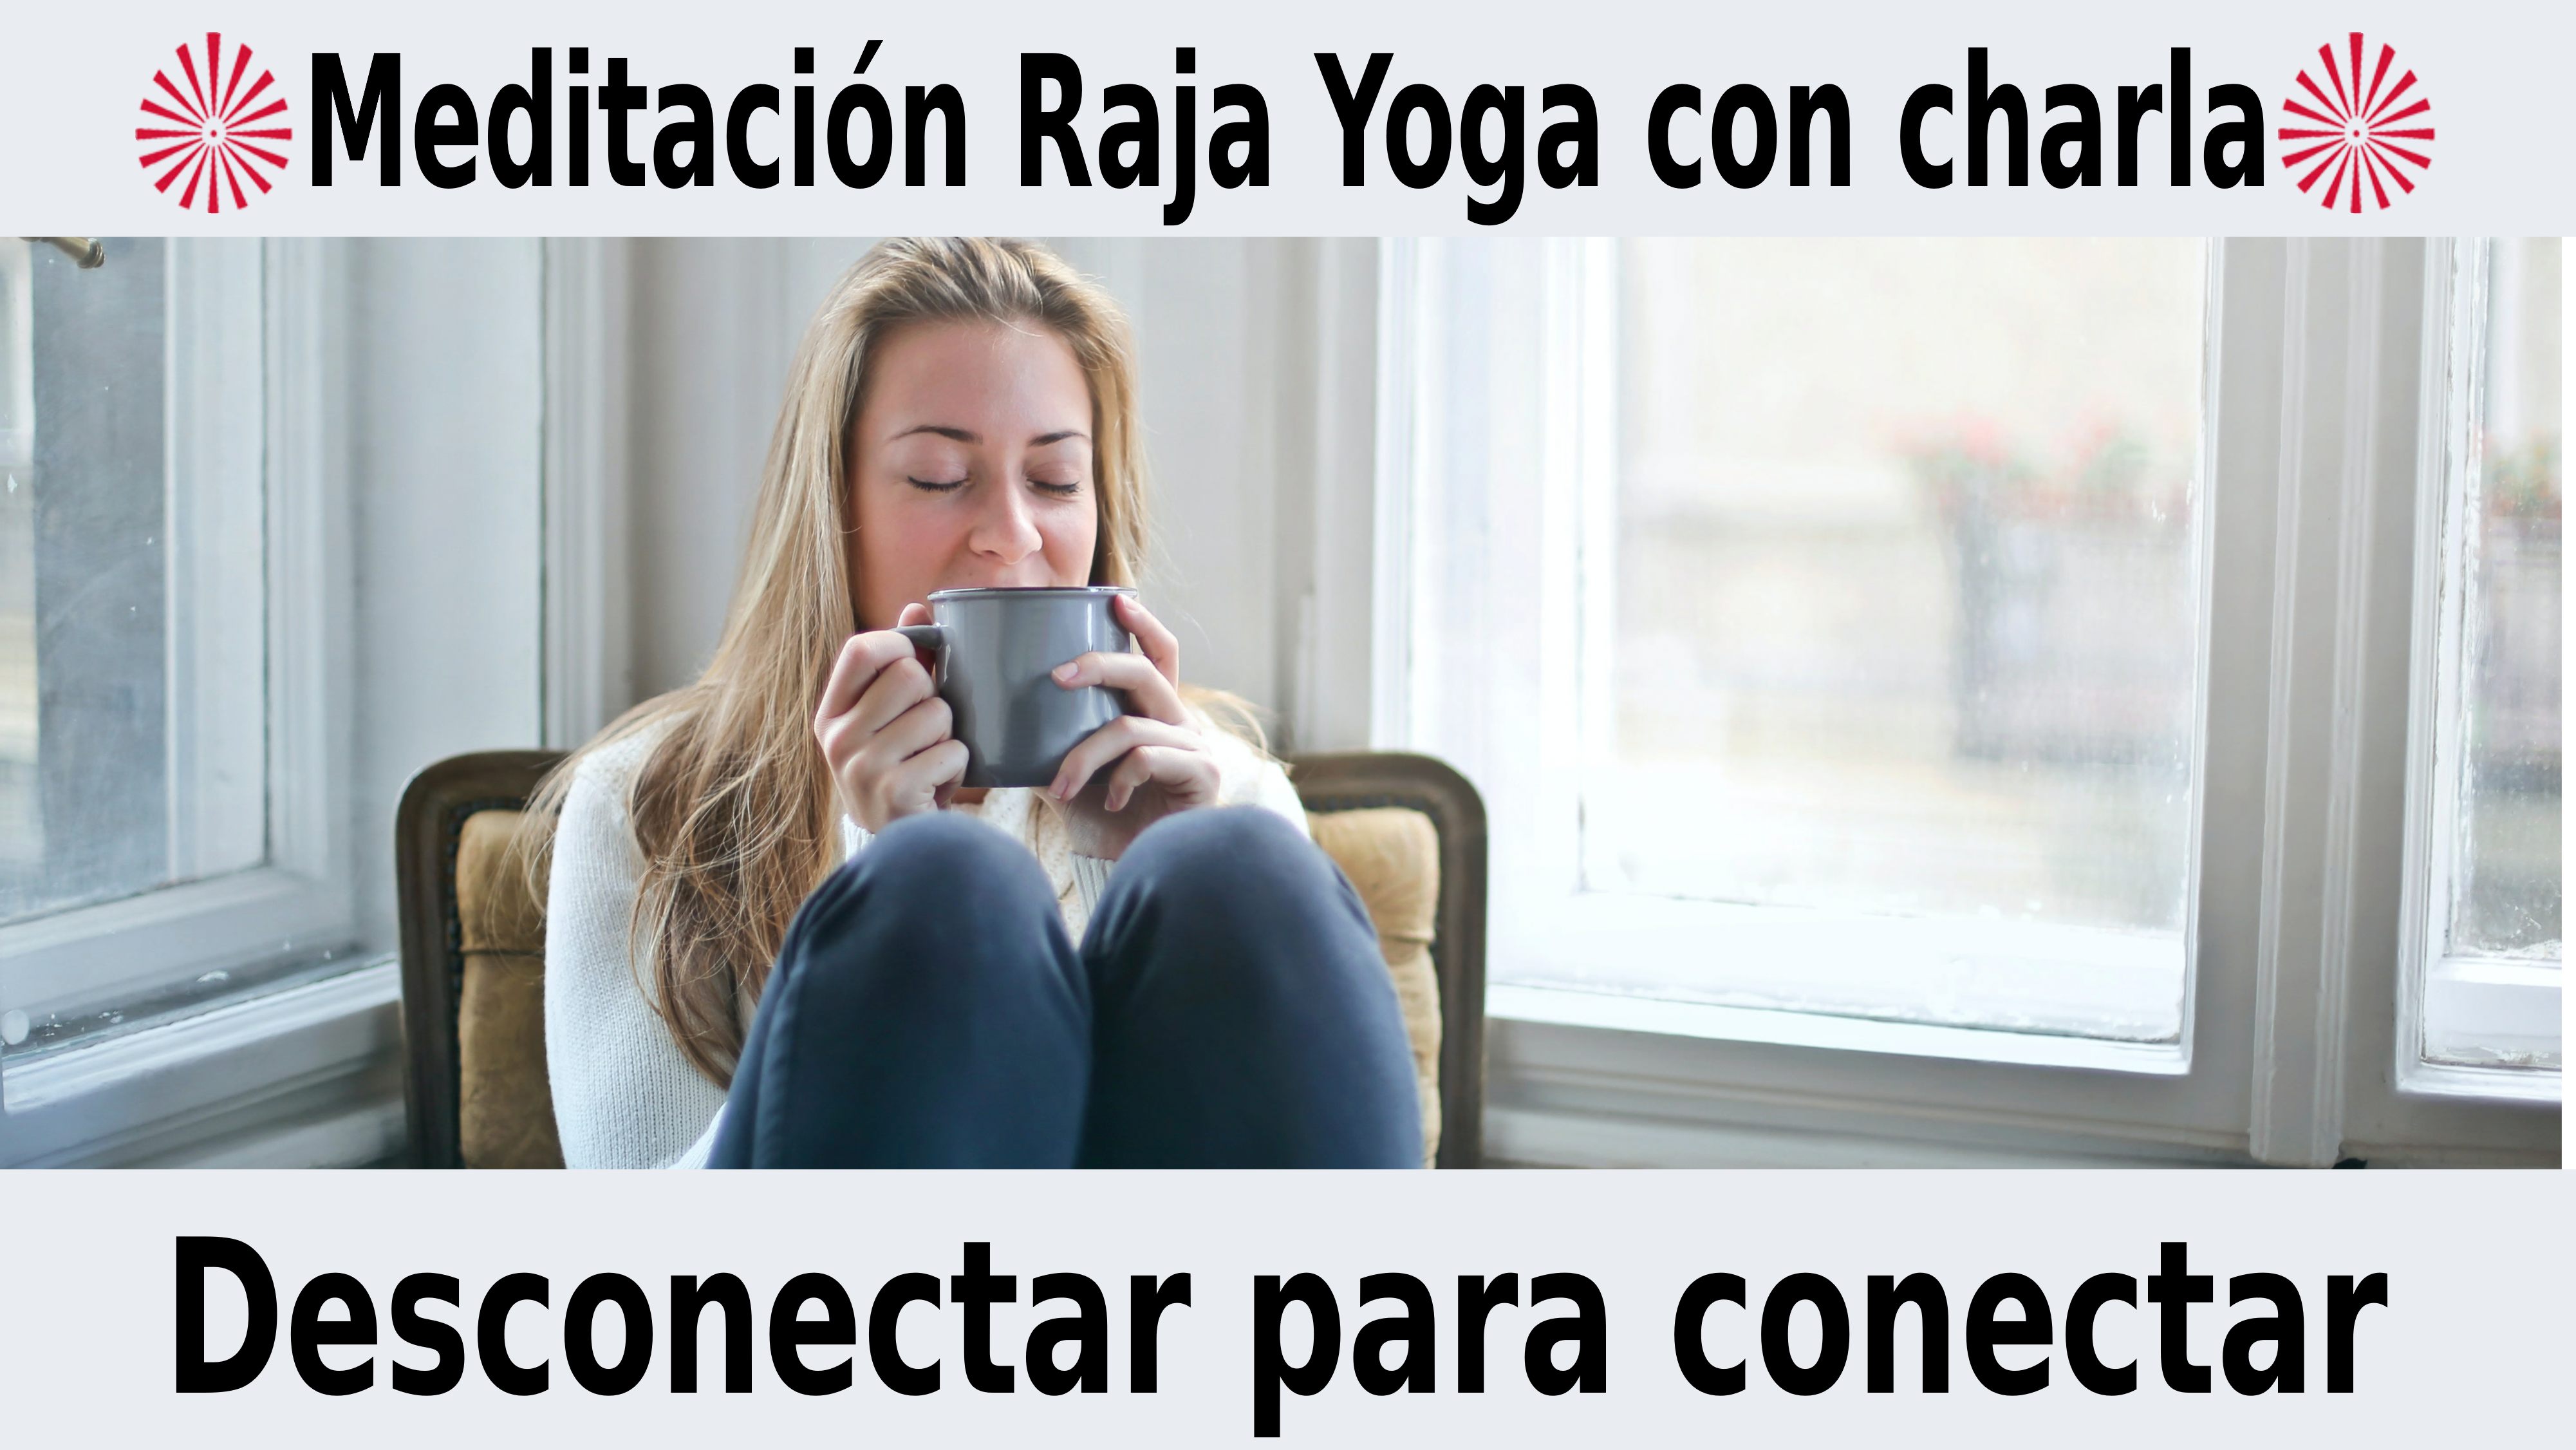 Meditación Raja Yoga con charla: Desconectar para conectar (28 Noviembre 2020) On-line desde Barcelona